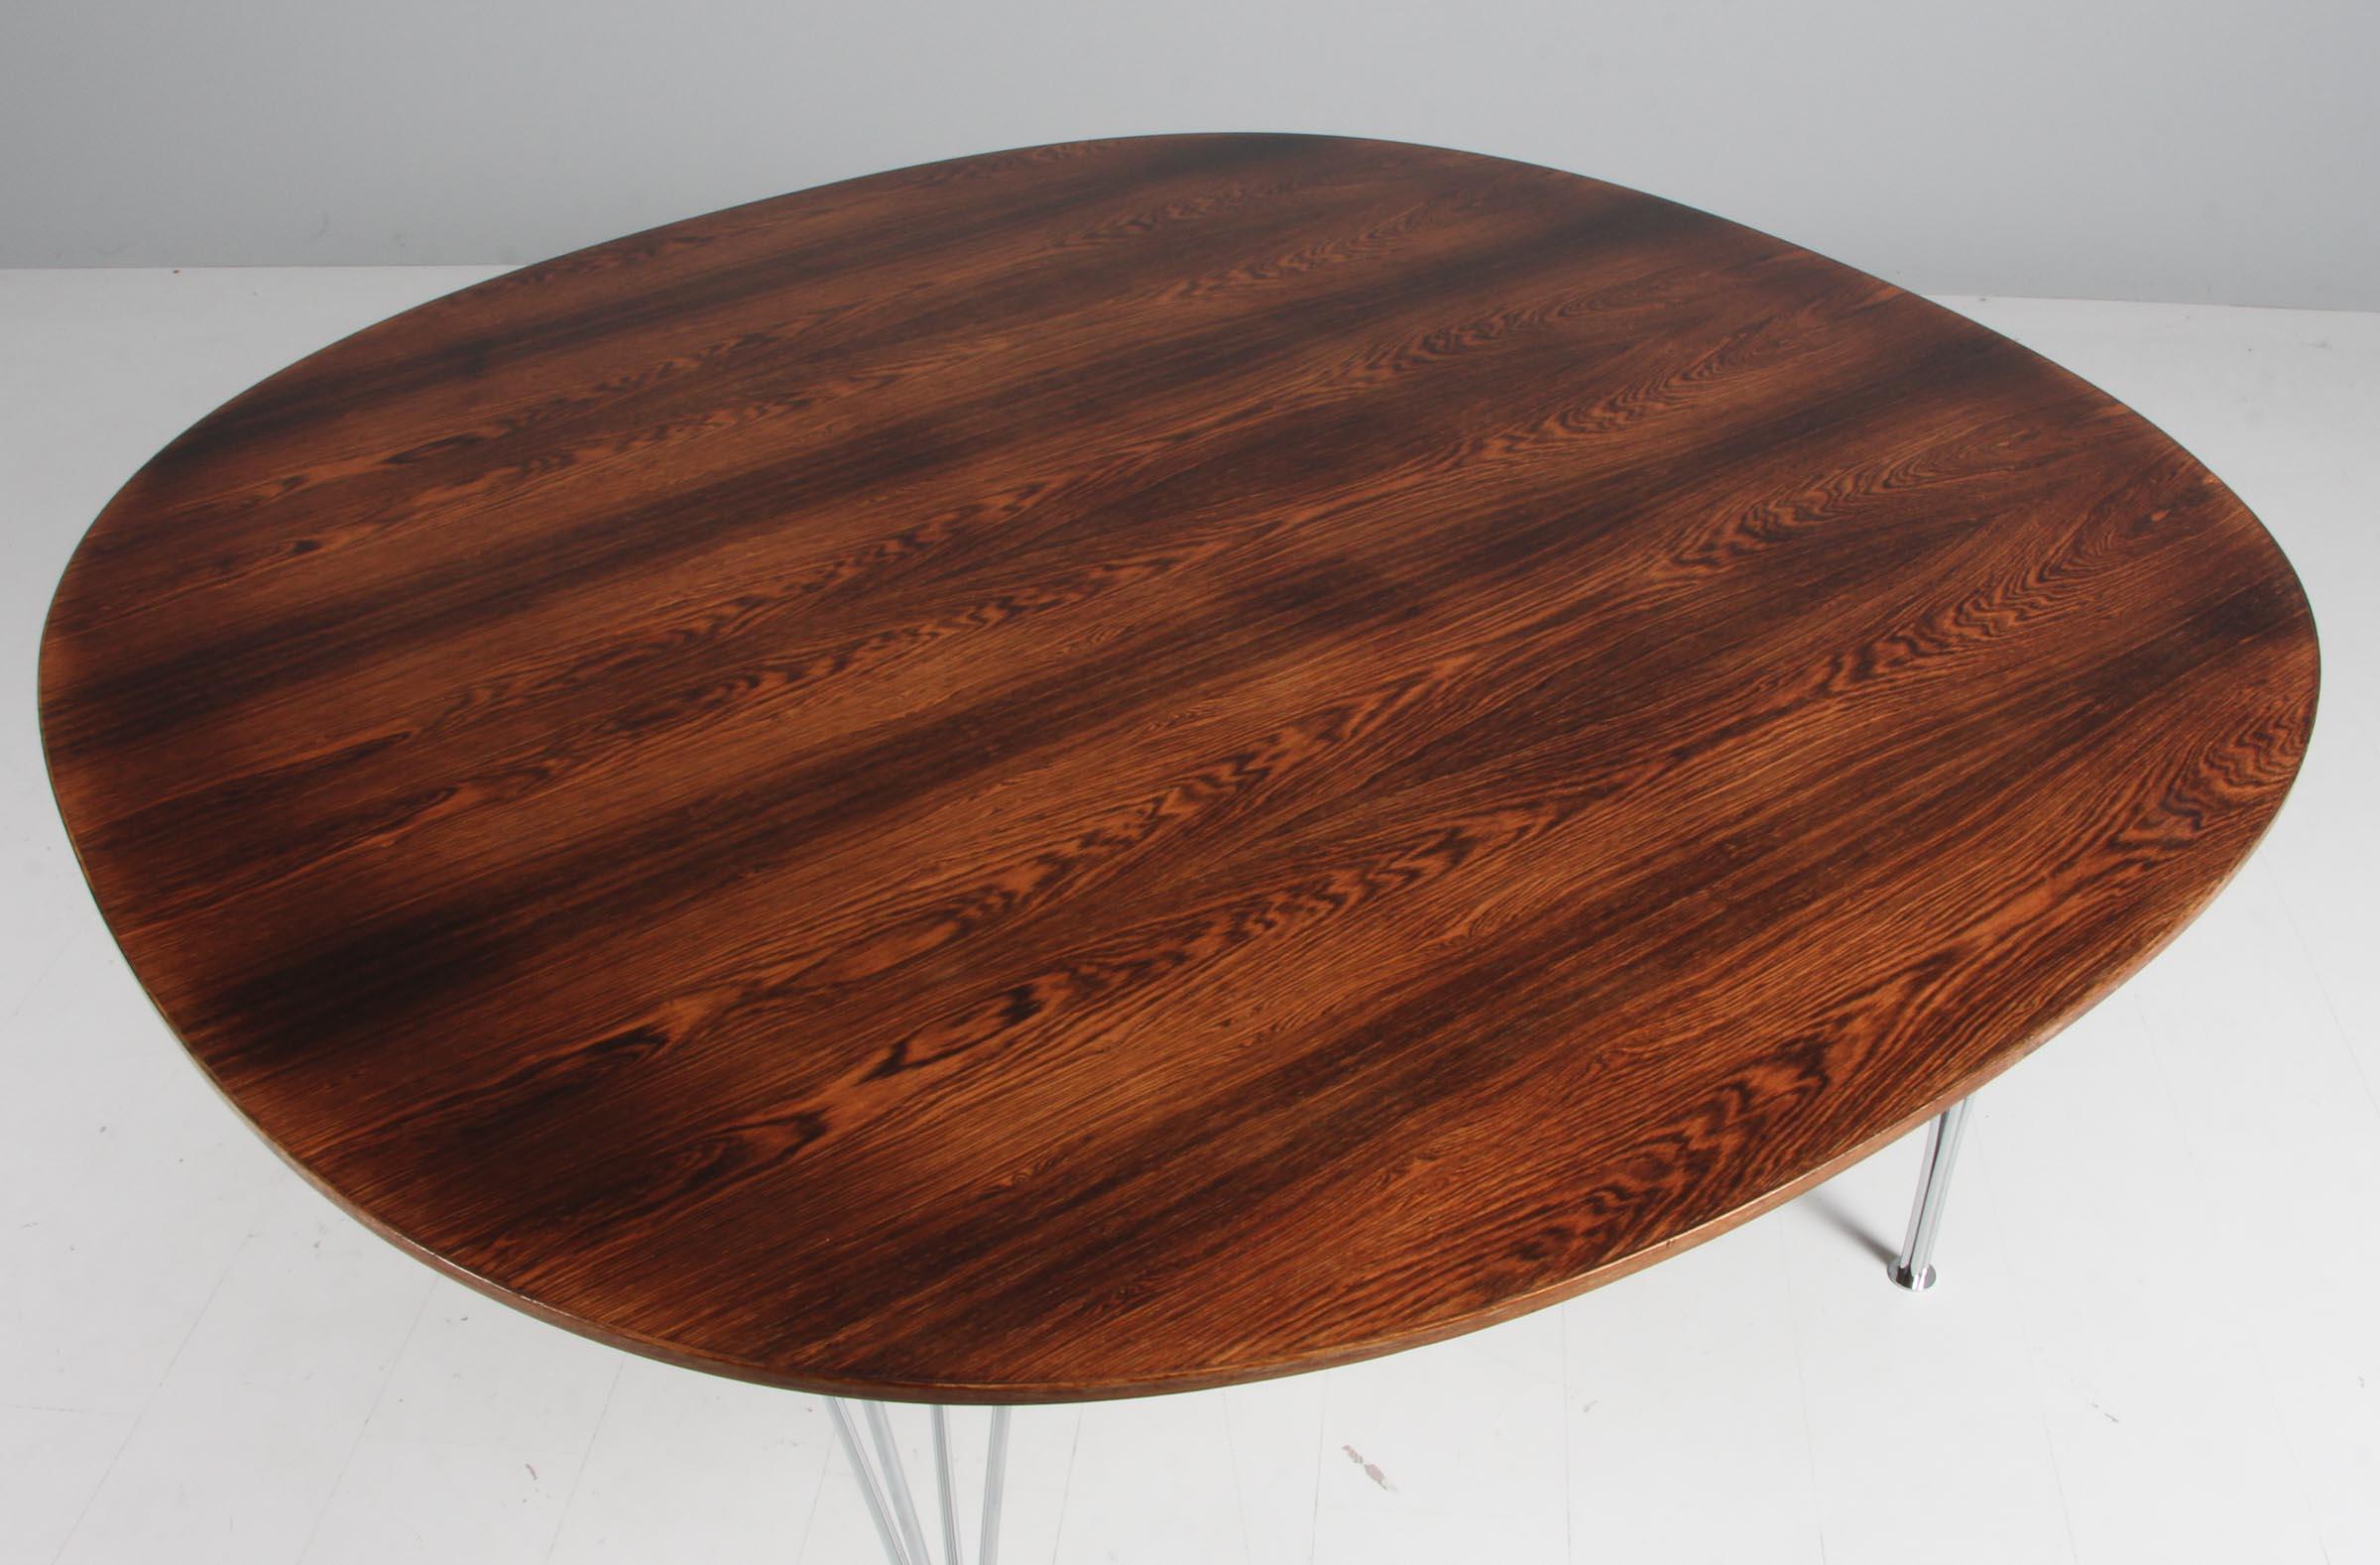 Table de salle à manger Piet Hein & Bruno Mathsson avec plateau original en bois de rose.

Base à six étoiles en aluminium et en acier.

Fabriqué par Fritz Hansen.